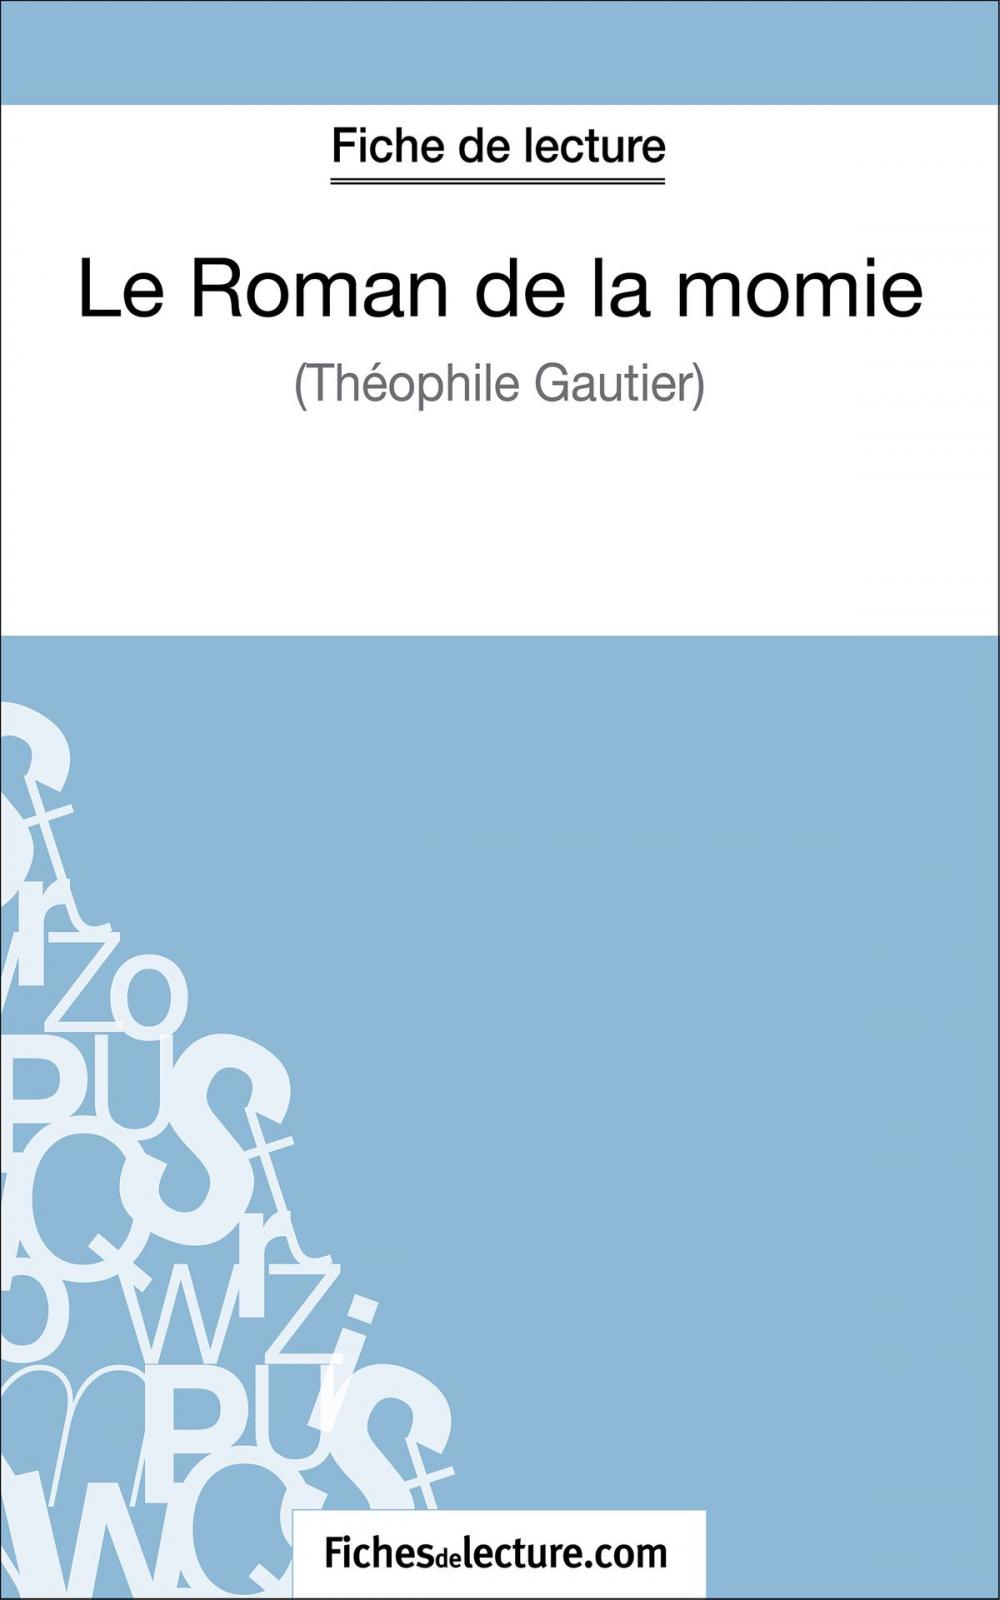 Big bigCover of Le Roman de la momie de Théophile Gautier (Fiche de lecture)